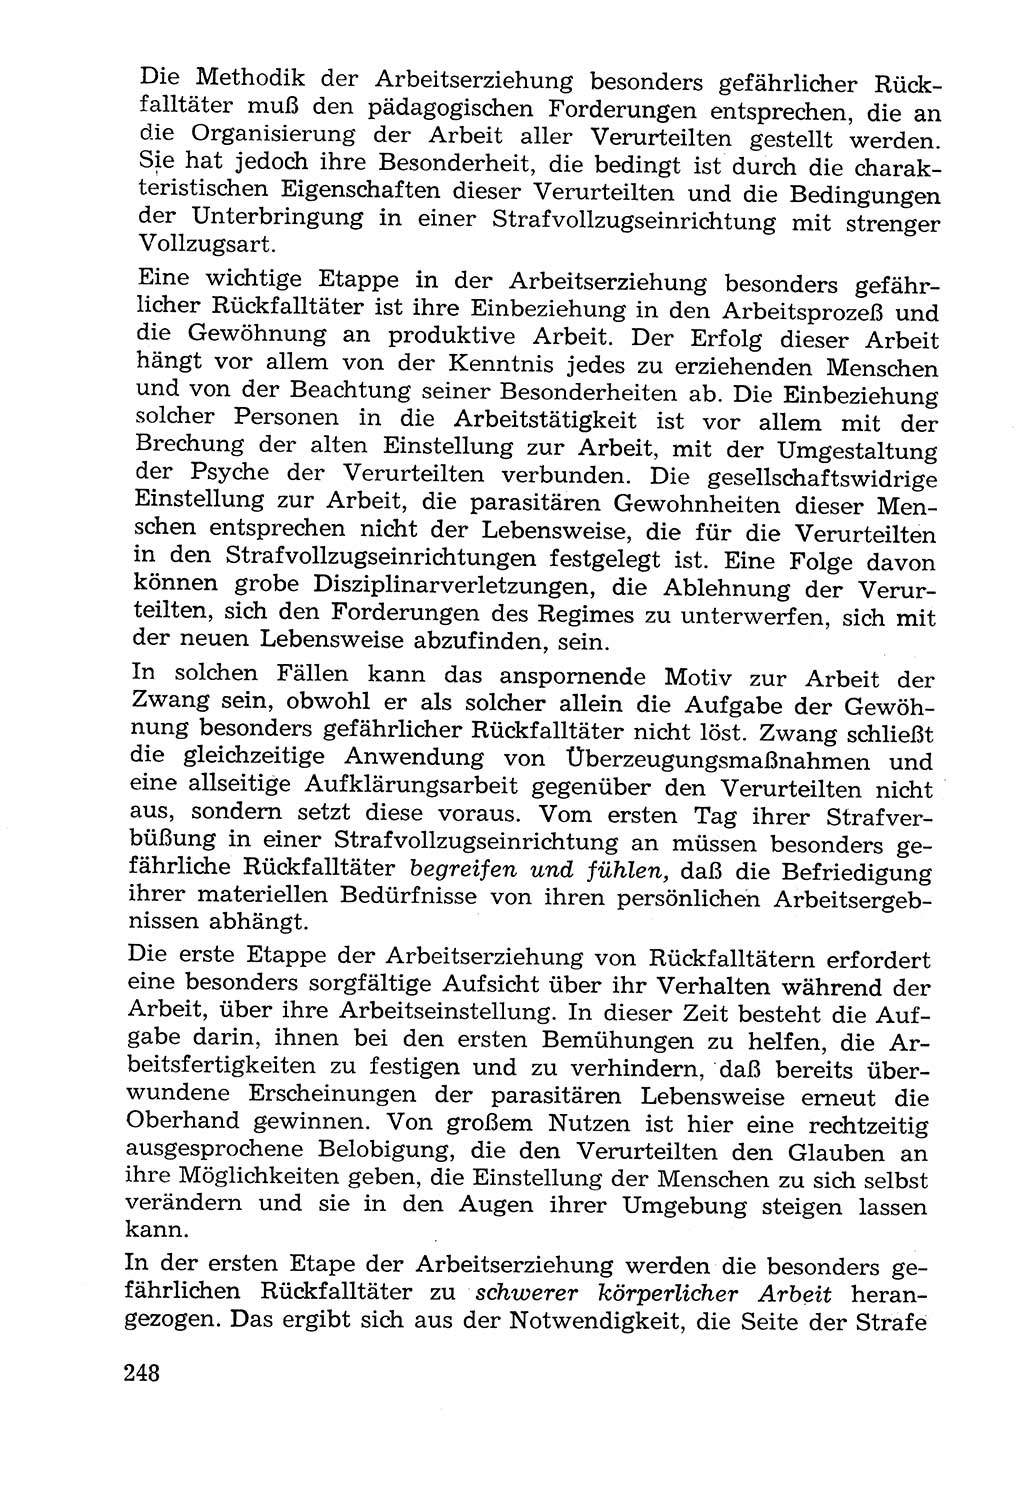 Lehrbuch der Strafvollzugspädagogik [Deutsche Demokratische Republik (DDR)] 1969, Seite 248 (Lb. SV-Pd. DDR 1969, S. 248)